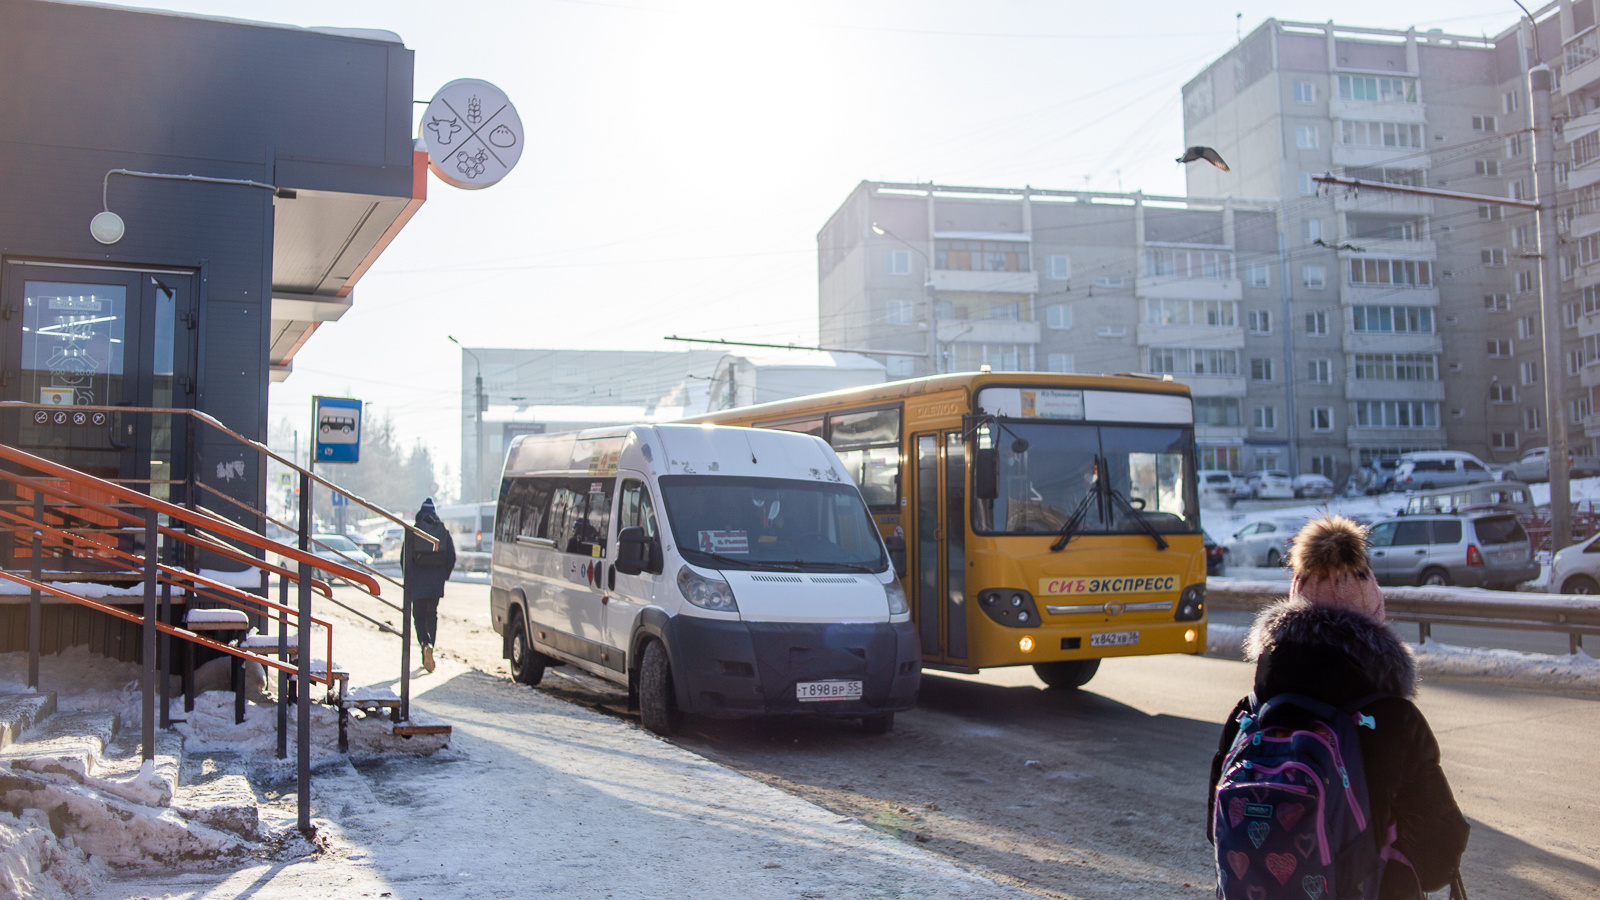 Крупный автобусный маршрут из Первомайского в центр Иркутска прекратил существование — перевозчик умер